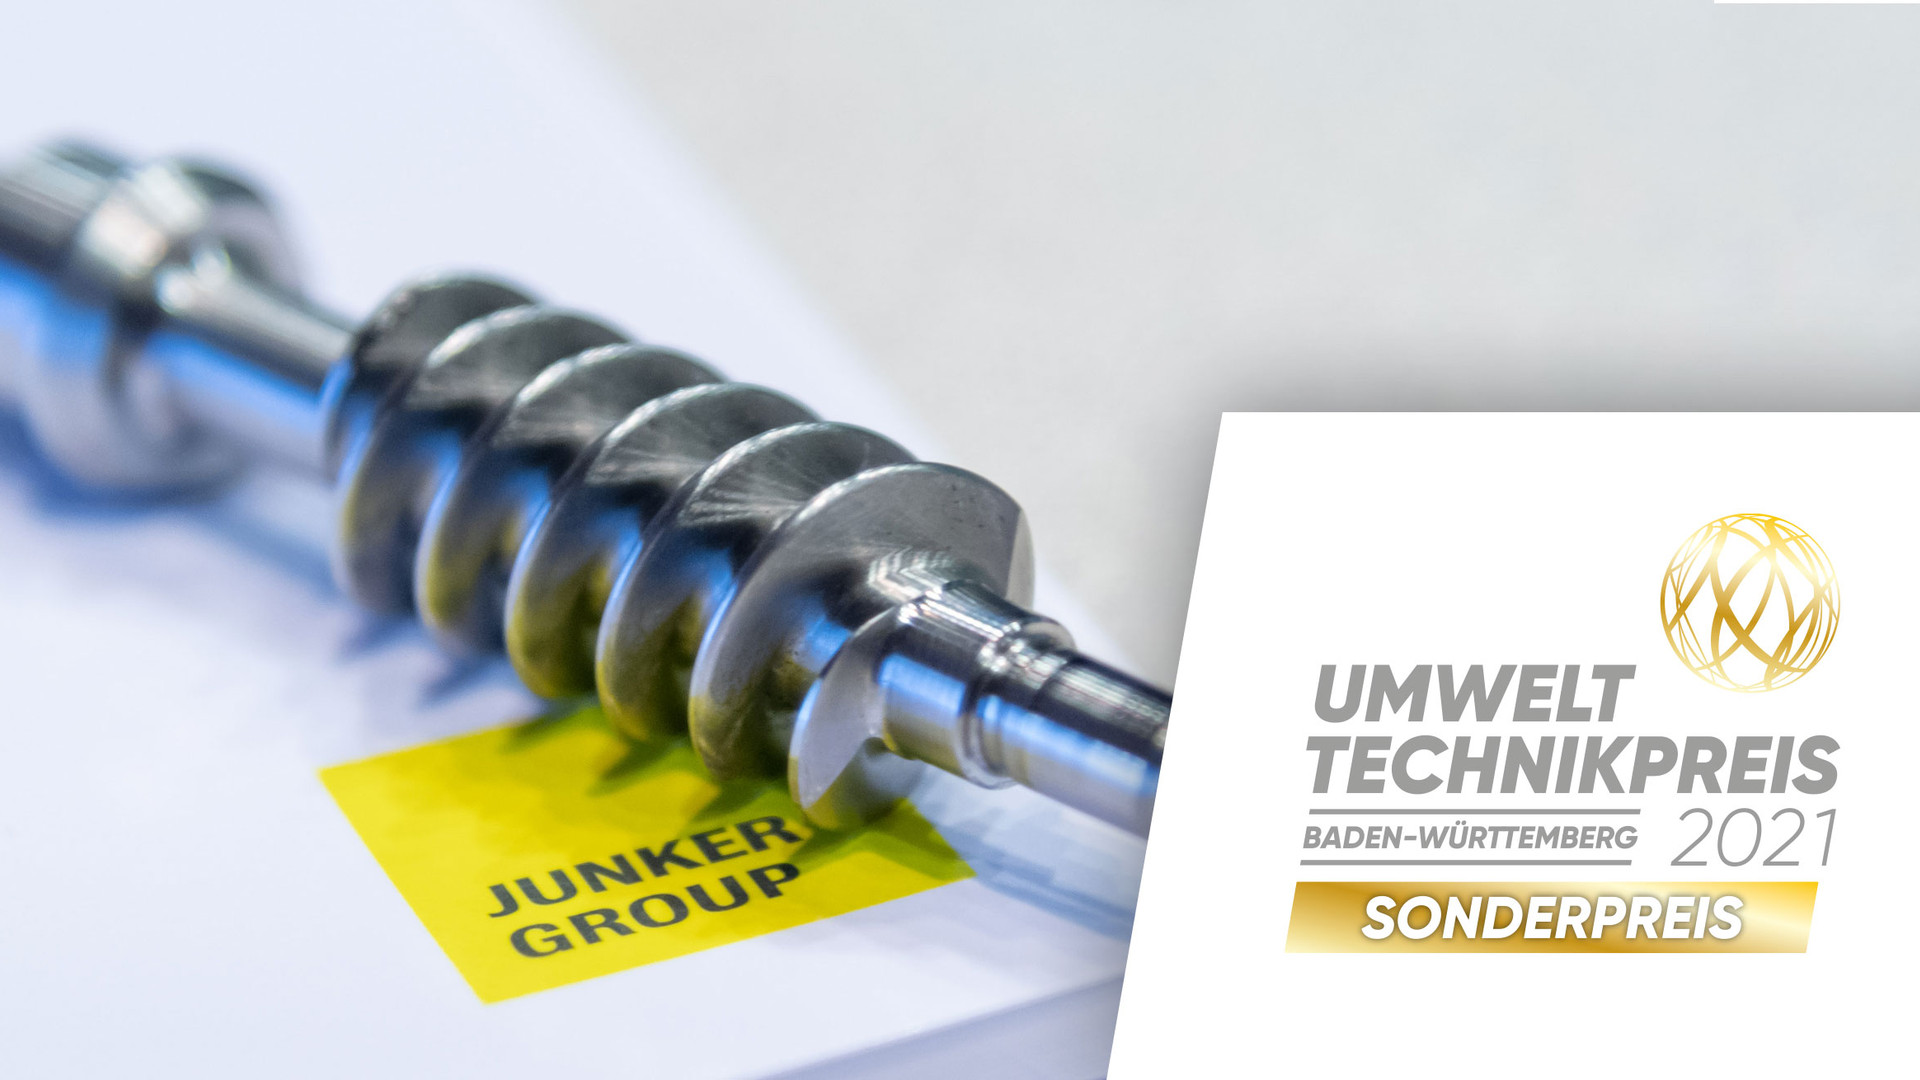 Der diesjährige Sonderpreis ging an die JUNKER Maschinenfabrik GmbH.